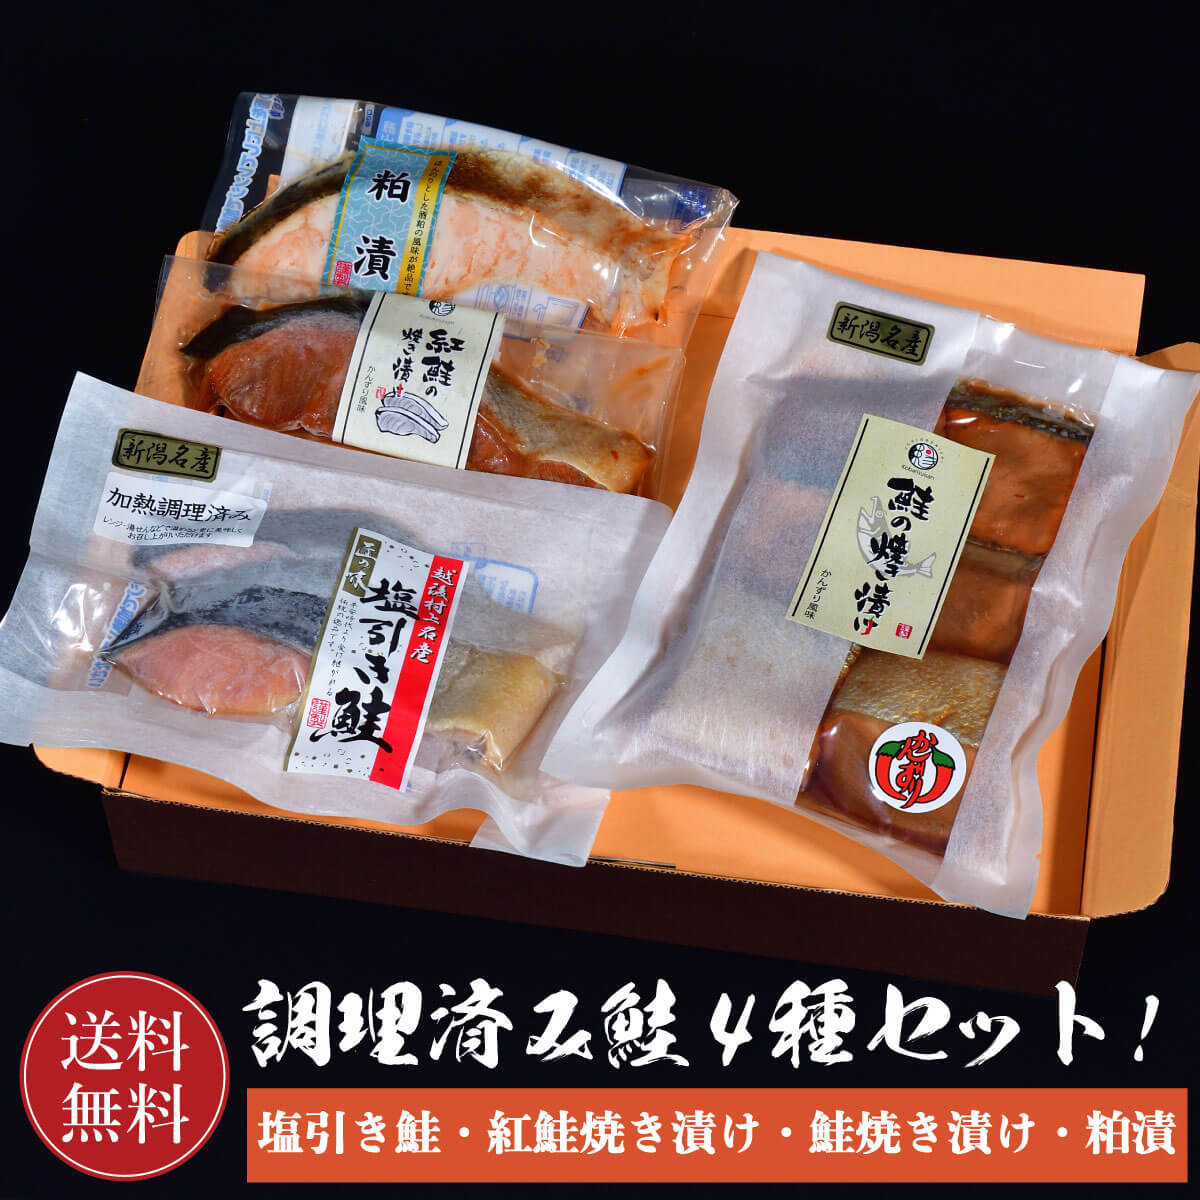 塩引鮭 紅鮭 鮭の焼き漬け 粕漬 かんずり風味 塩引き鮭 新潟郷土料理 鮭焼漬 鮭 銀鮭 焼漬 さけ サケ 切り身 かんず…